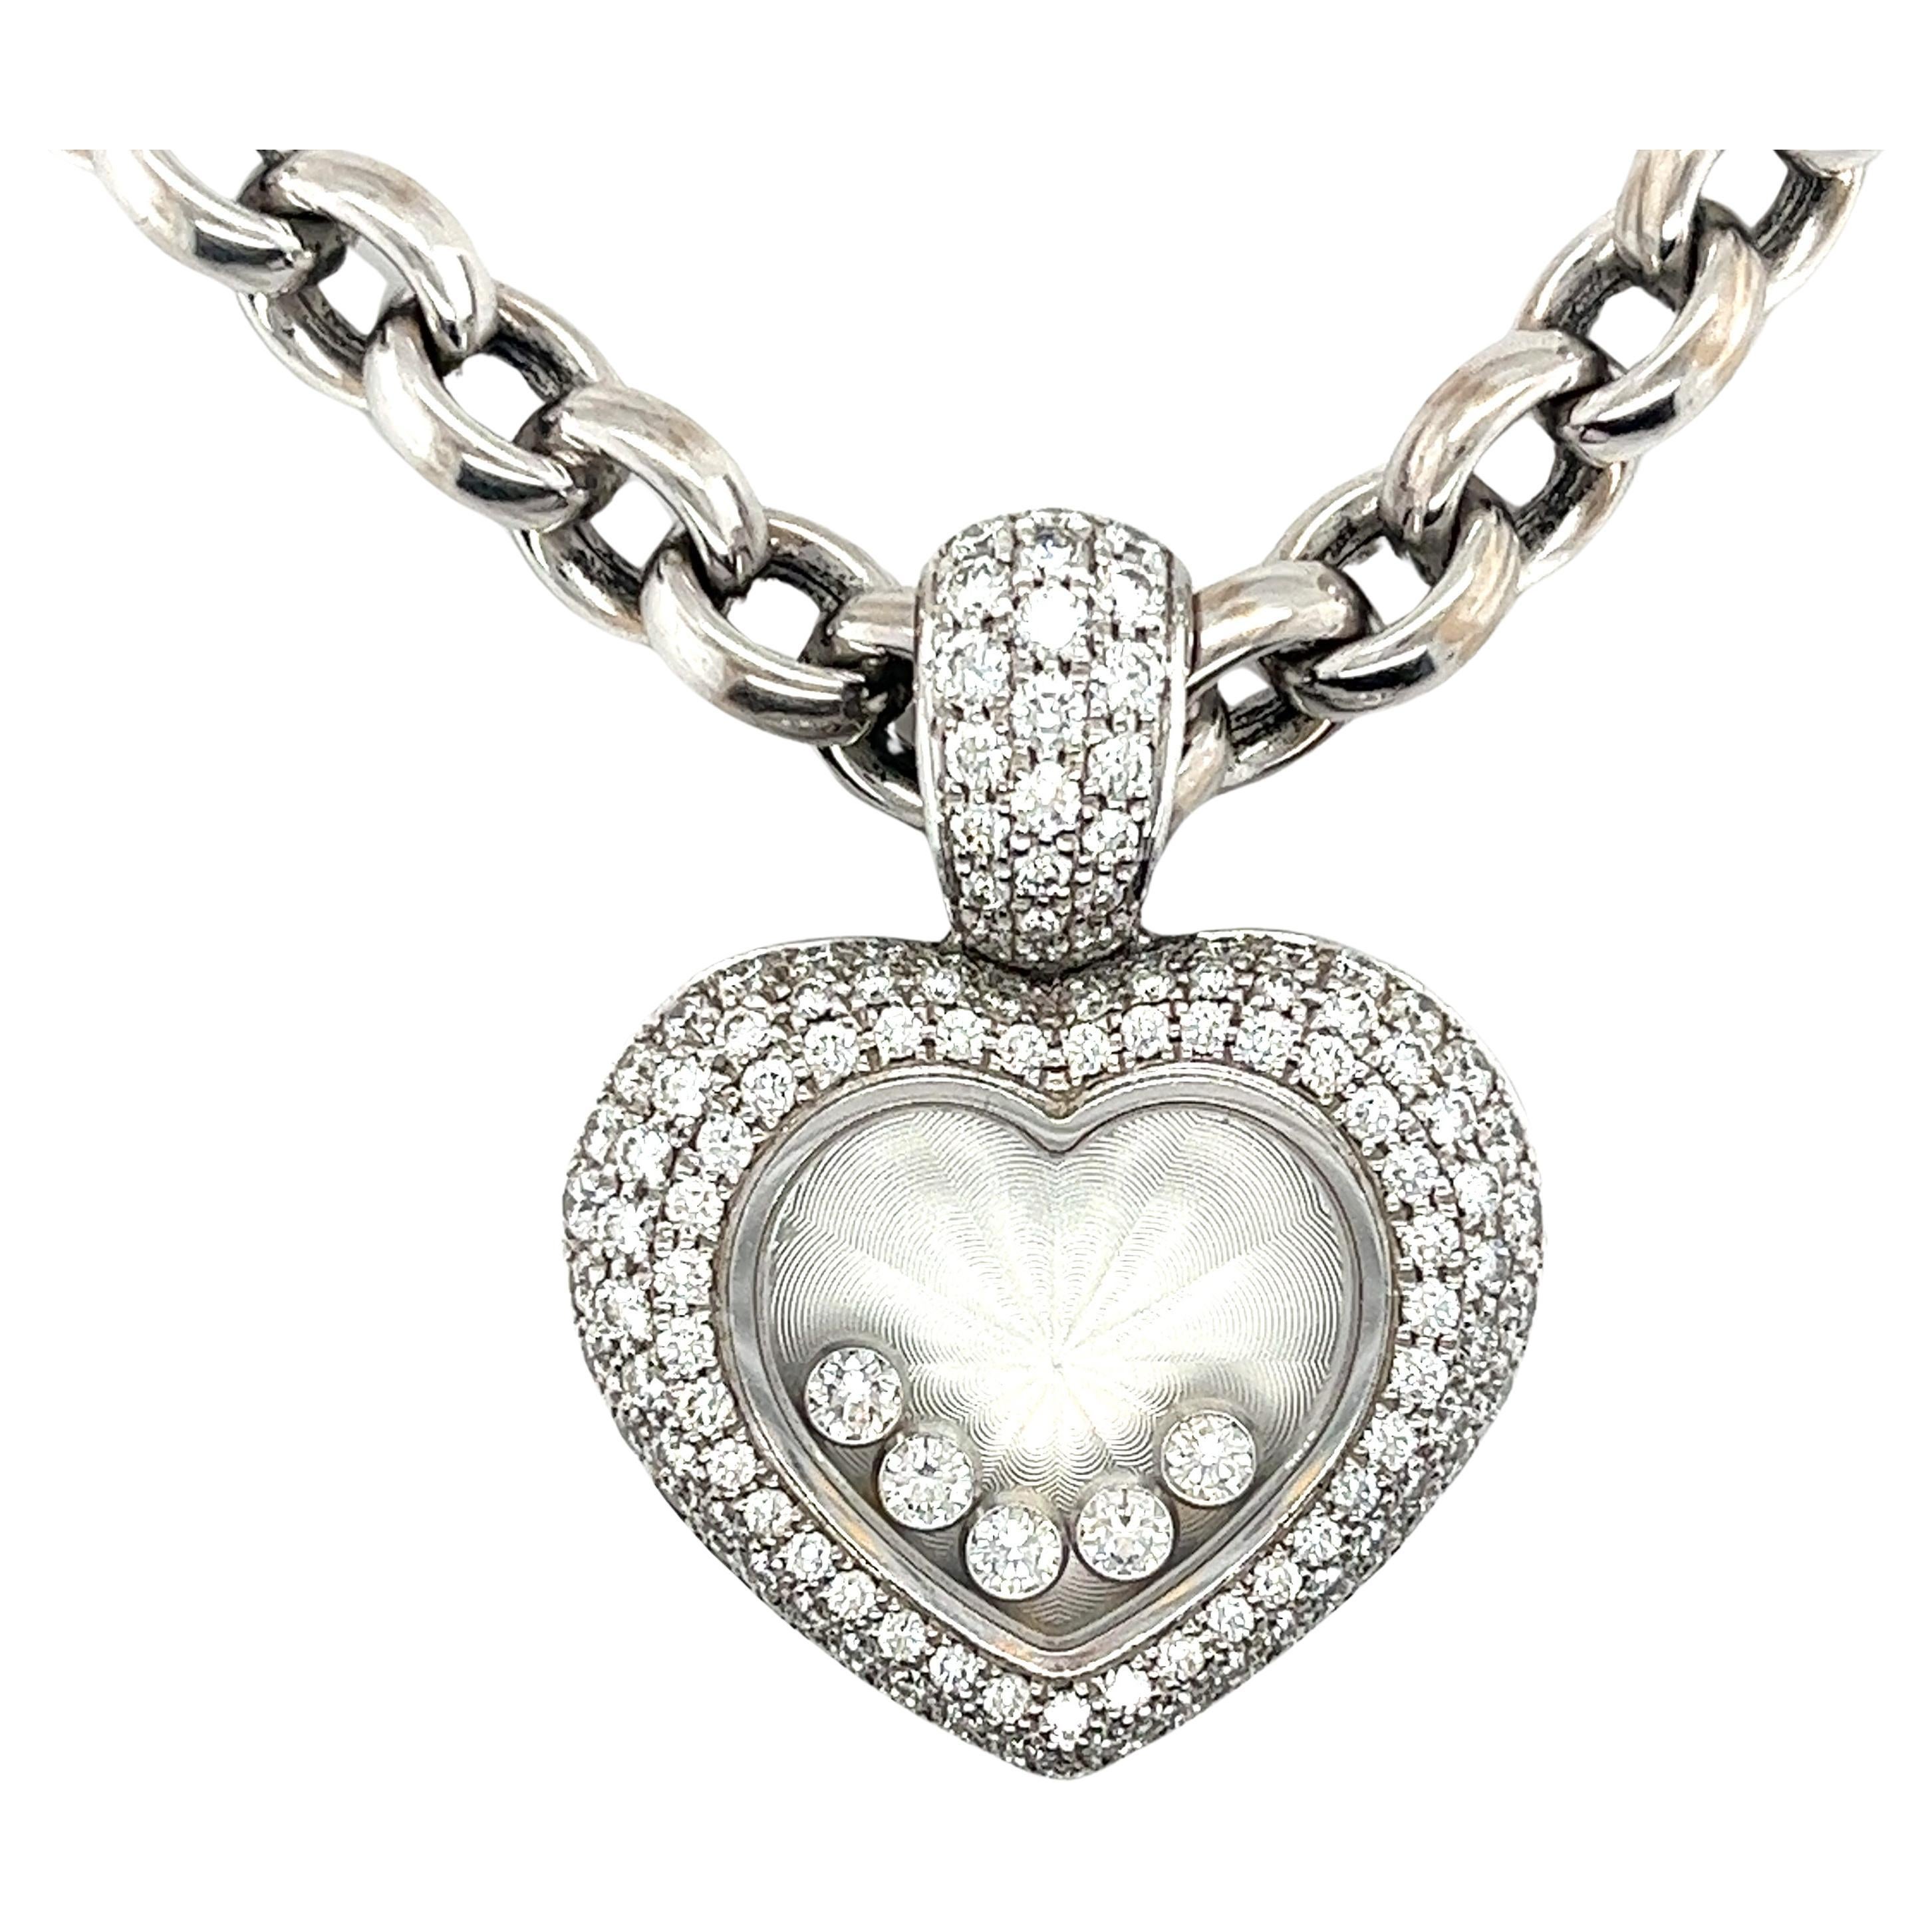 Chopard Happy Diamond collier pendentif en forme de cœur en diamants flottants en or blanc 18k. Complet avec l'étui d'origine de Chopard et les papiers de réception. 

Ce collier pendentif comporte 5 diamants flottants qui éblouissent et dansent